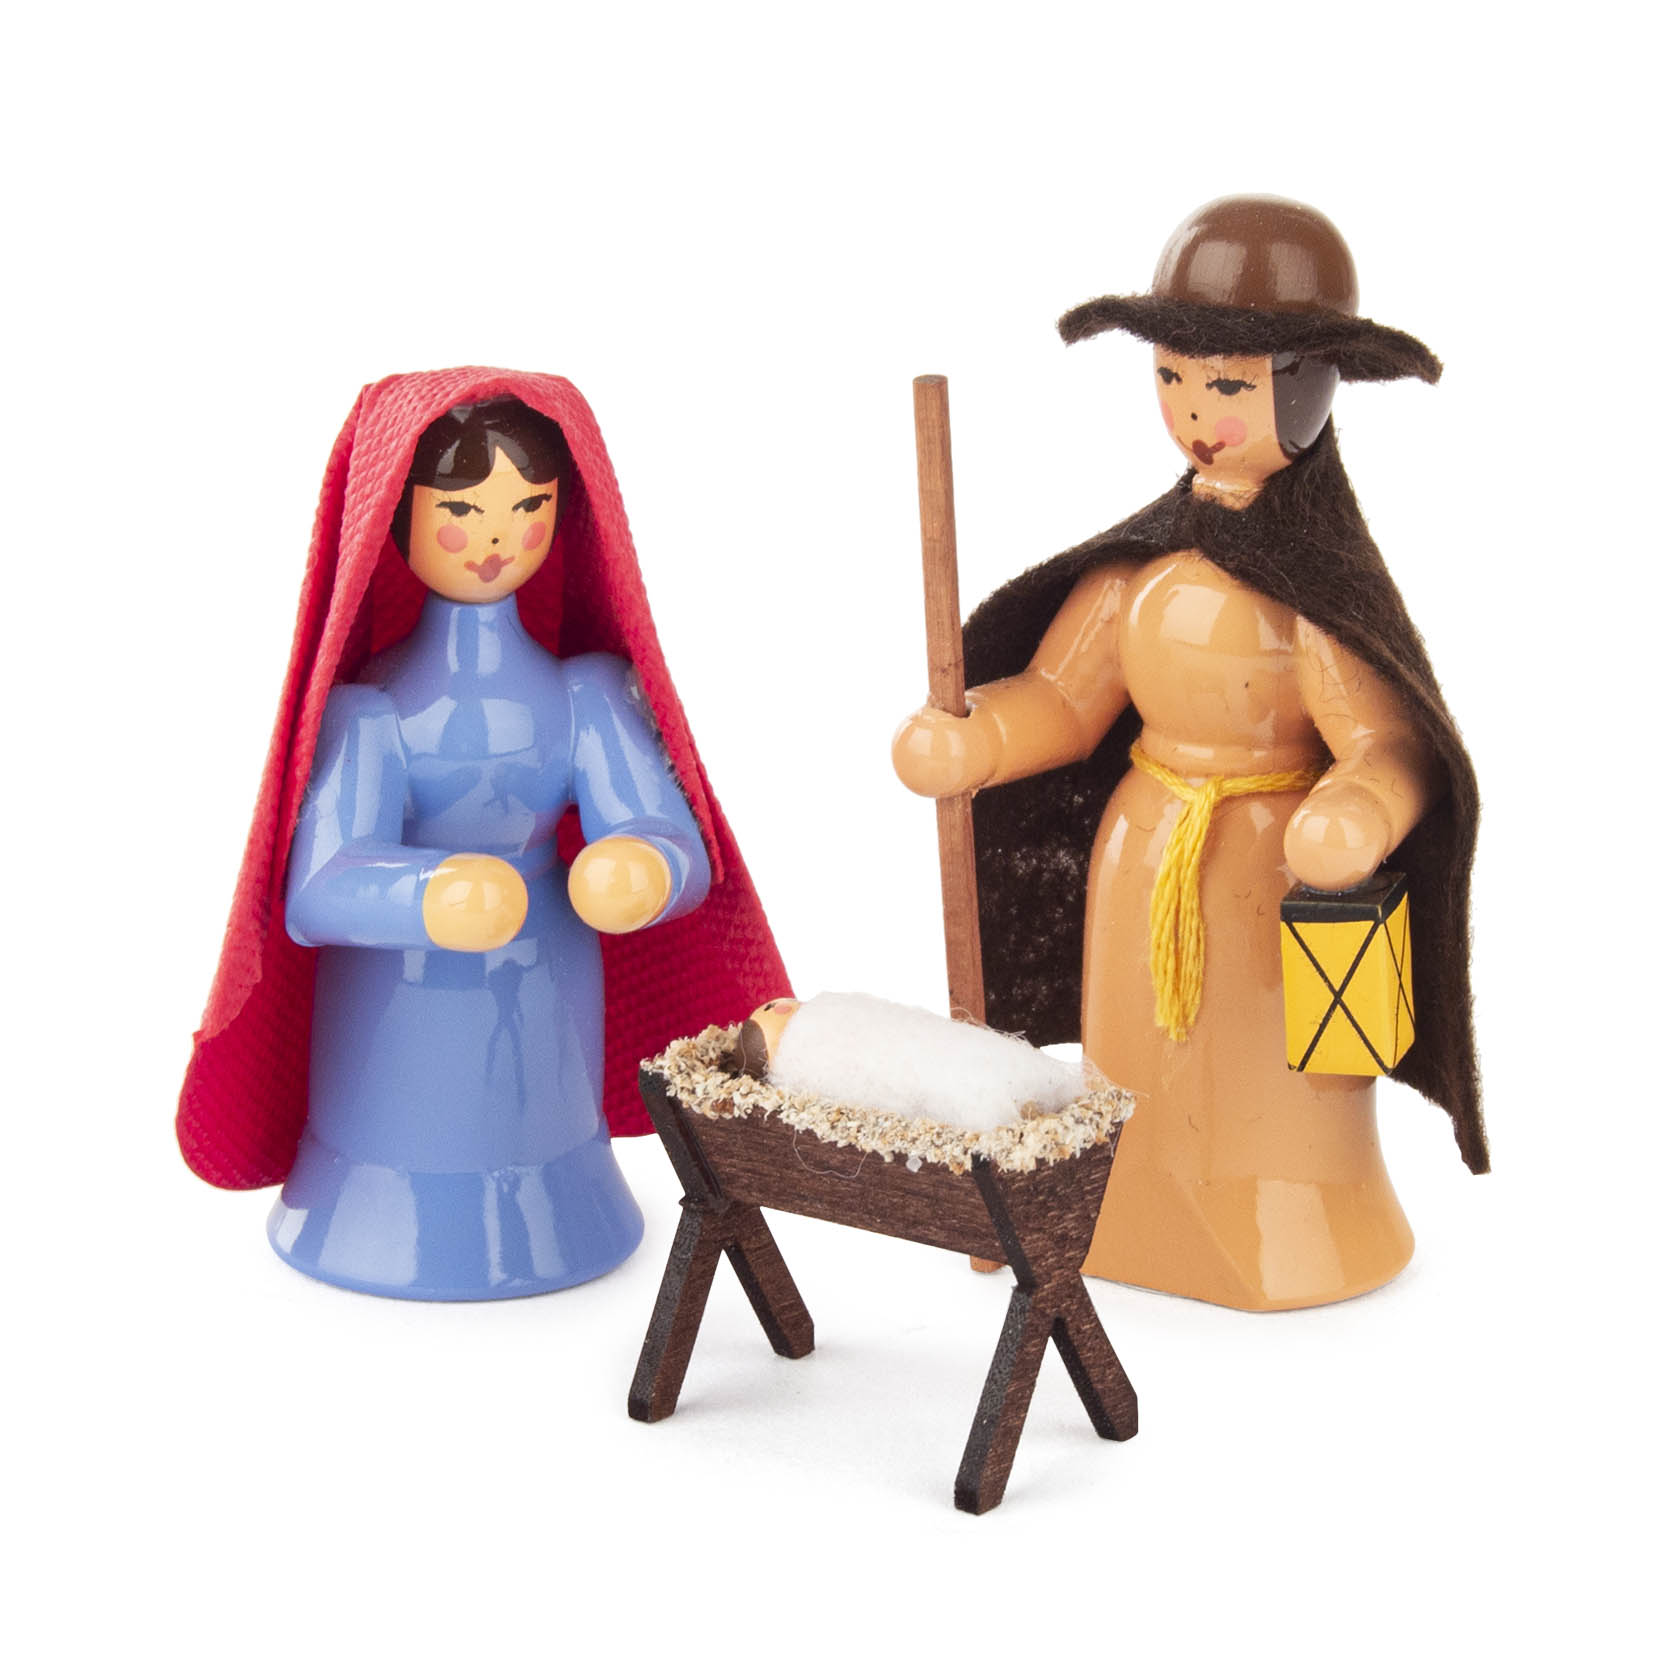 Krippefiguren farbig (3) Maria,Joseph,Krippe mit Kind im Dregeno Online Shop günstig kaufen